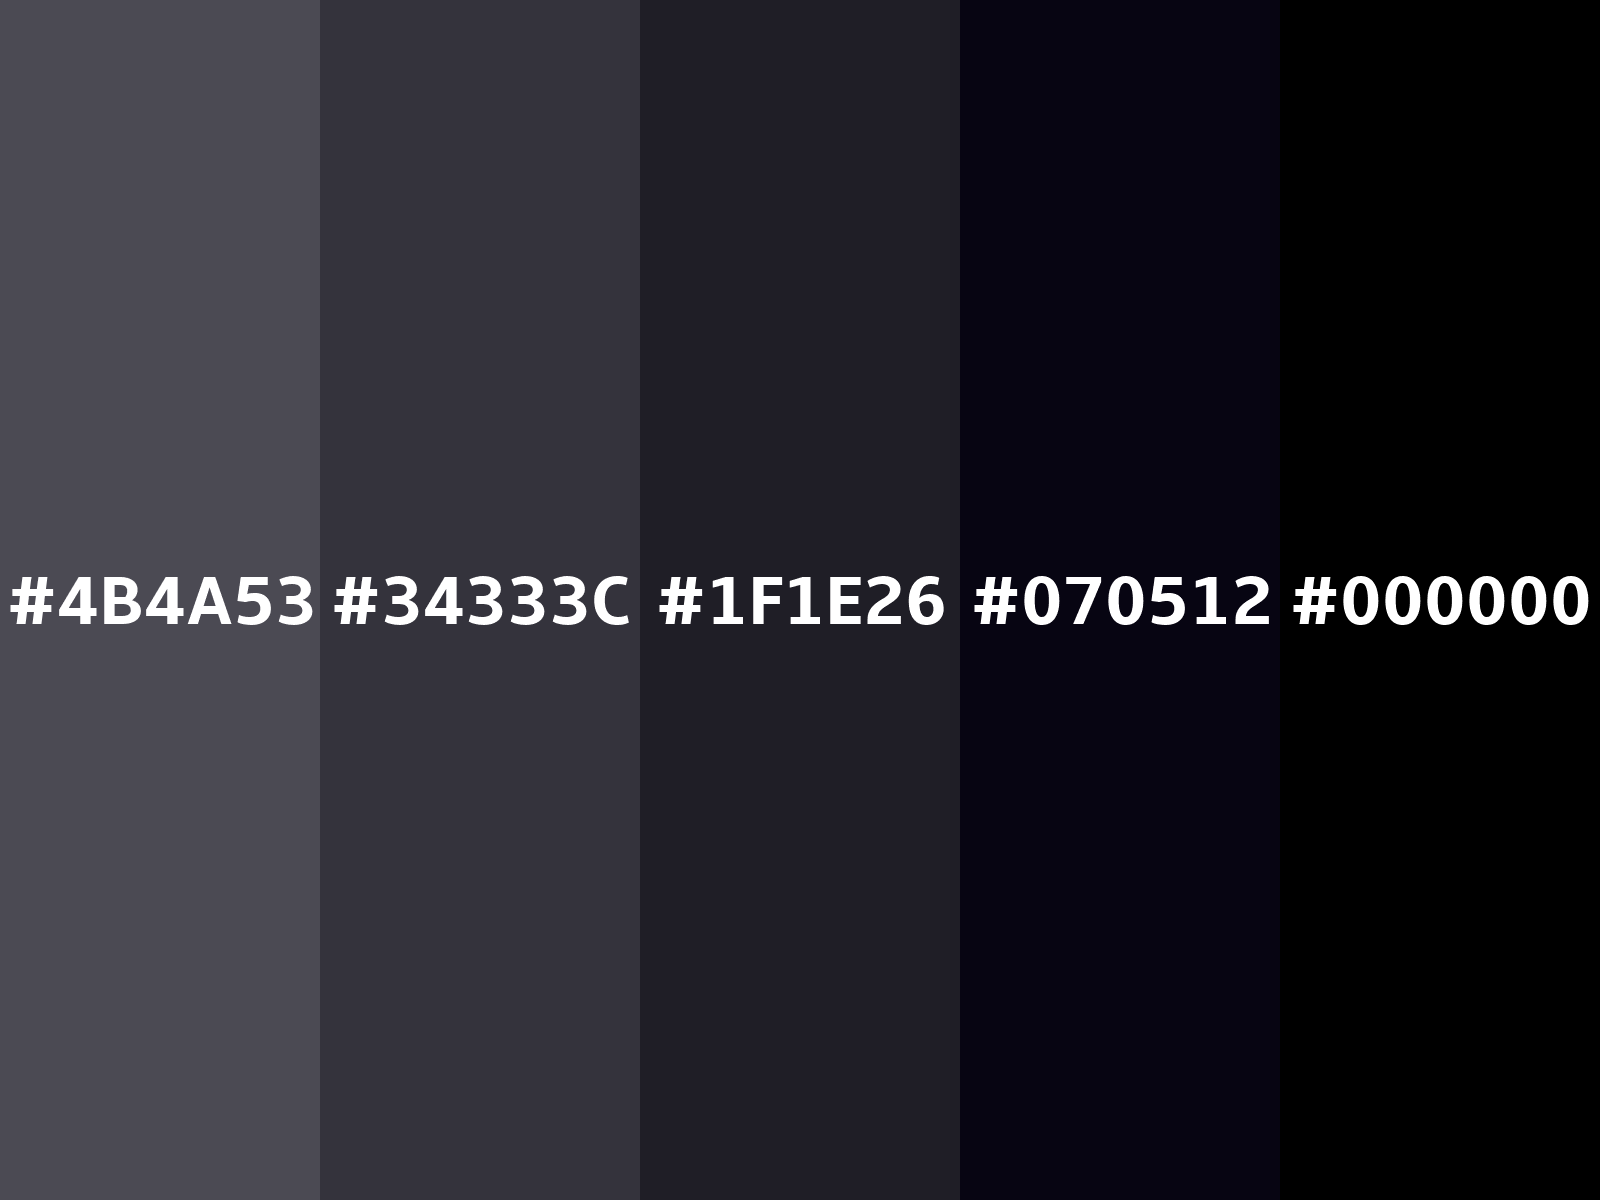 Mã hex màu nền 4B4A53 được thiết kế để tạo nên một không gian đầy cá tính và năng động. Hãy cùng xem hình ảnh được đính kèm để chiêm ngưỡng sự phối hợp hoàn hảo của màu sắc này cho dự án của bạn.